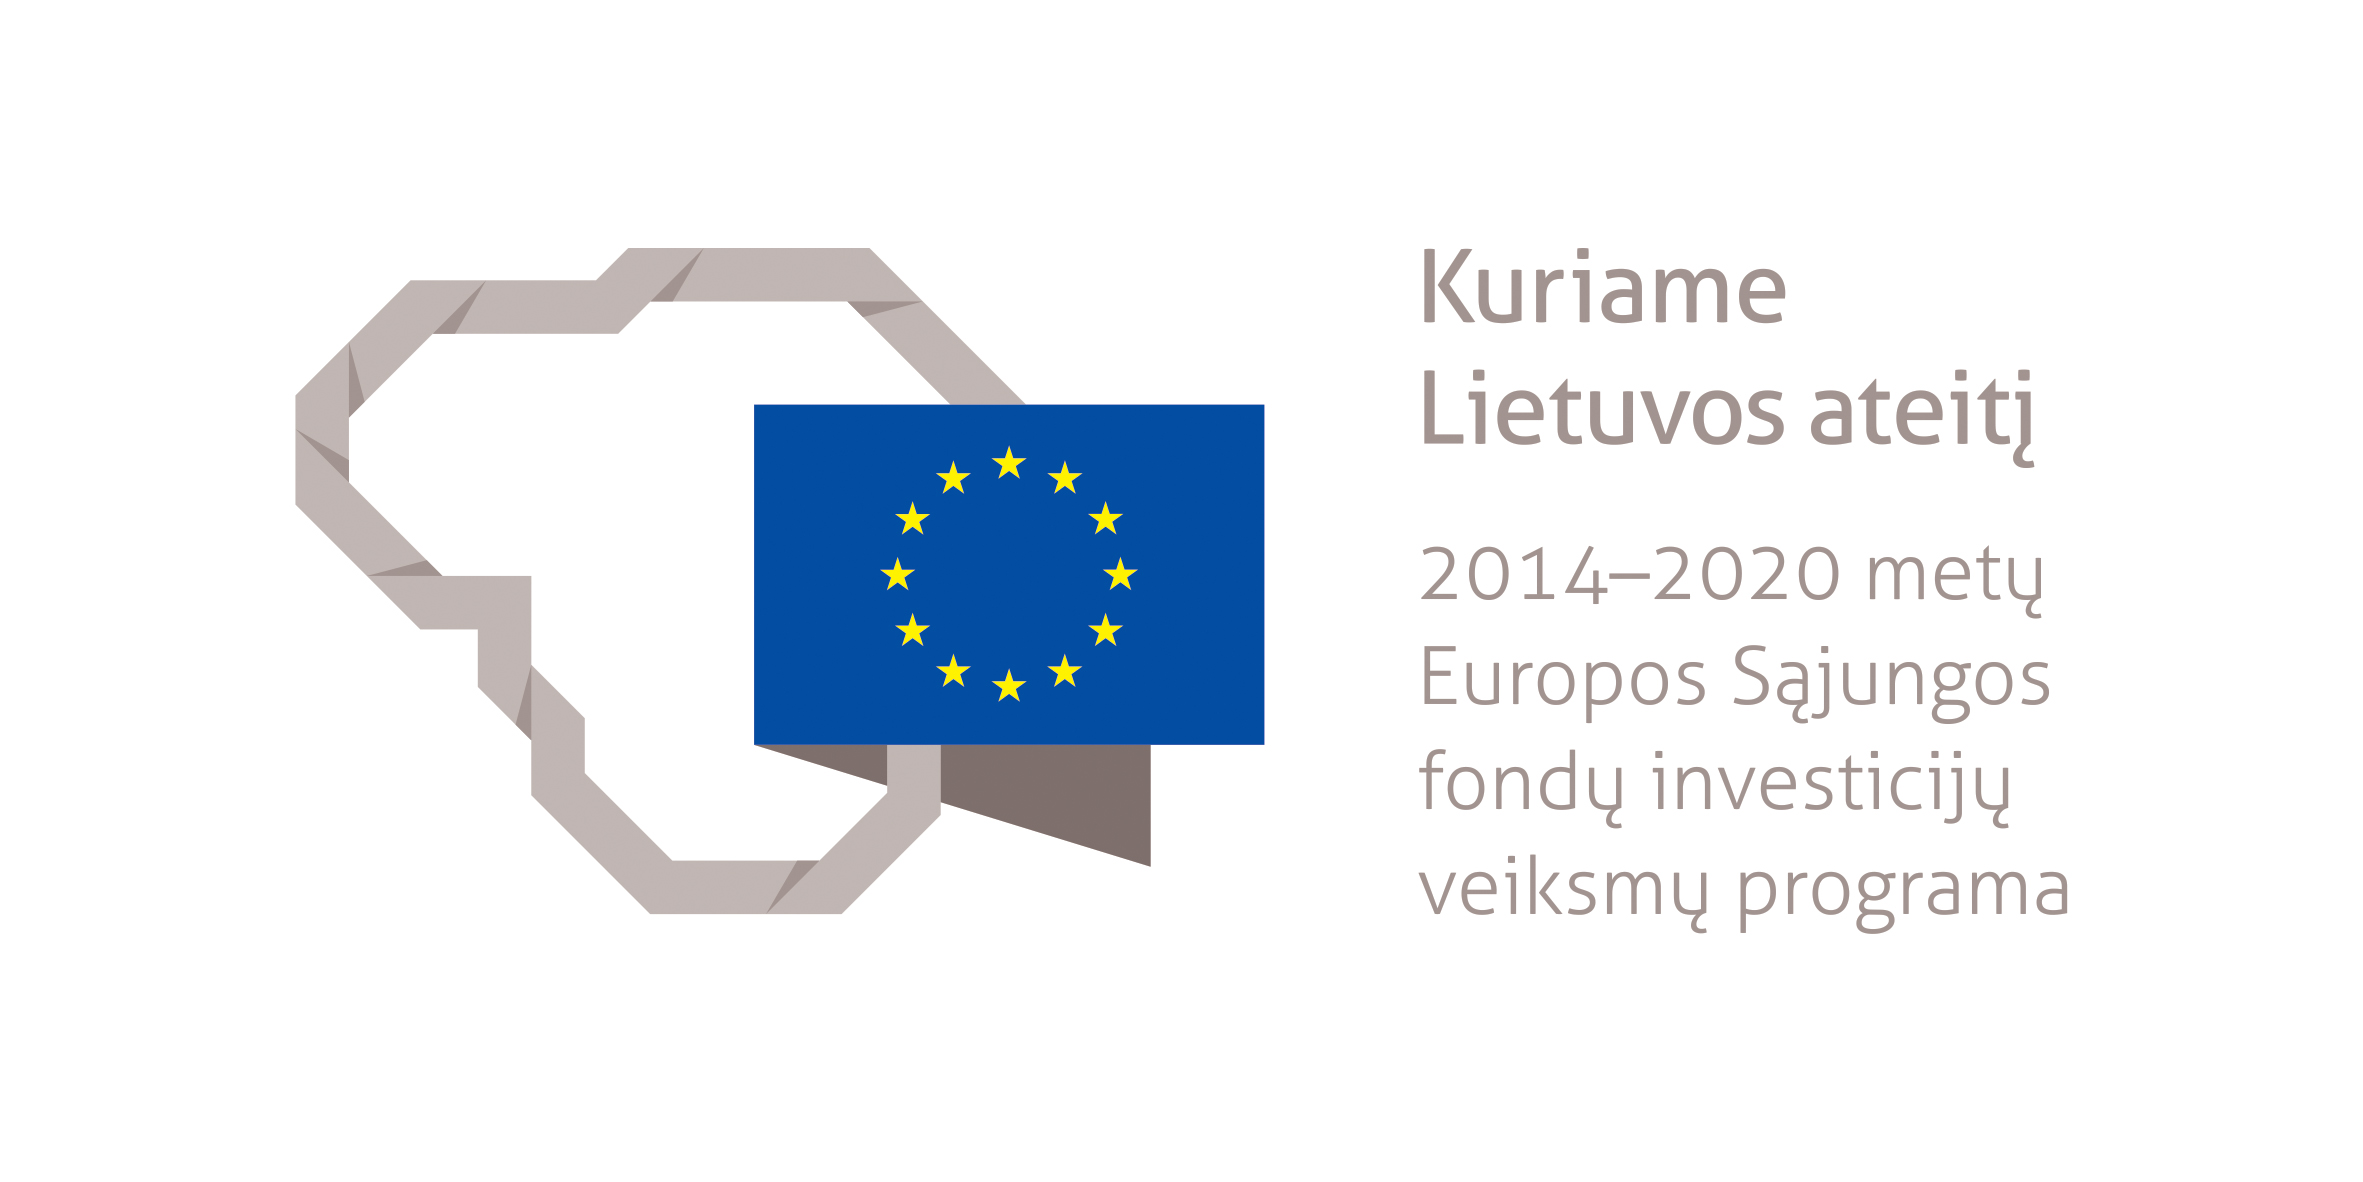 Projektas bendrai finansuotas iš Europos socialinio fondo lėšų (projekto nr. 09.3.3-LMT-K-712-25-0221) pagal dotacijos sutartį su Lietuvos mokslo taryba (LMTLT)